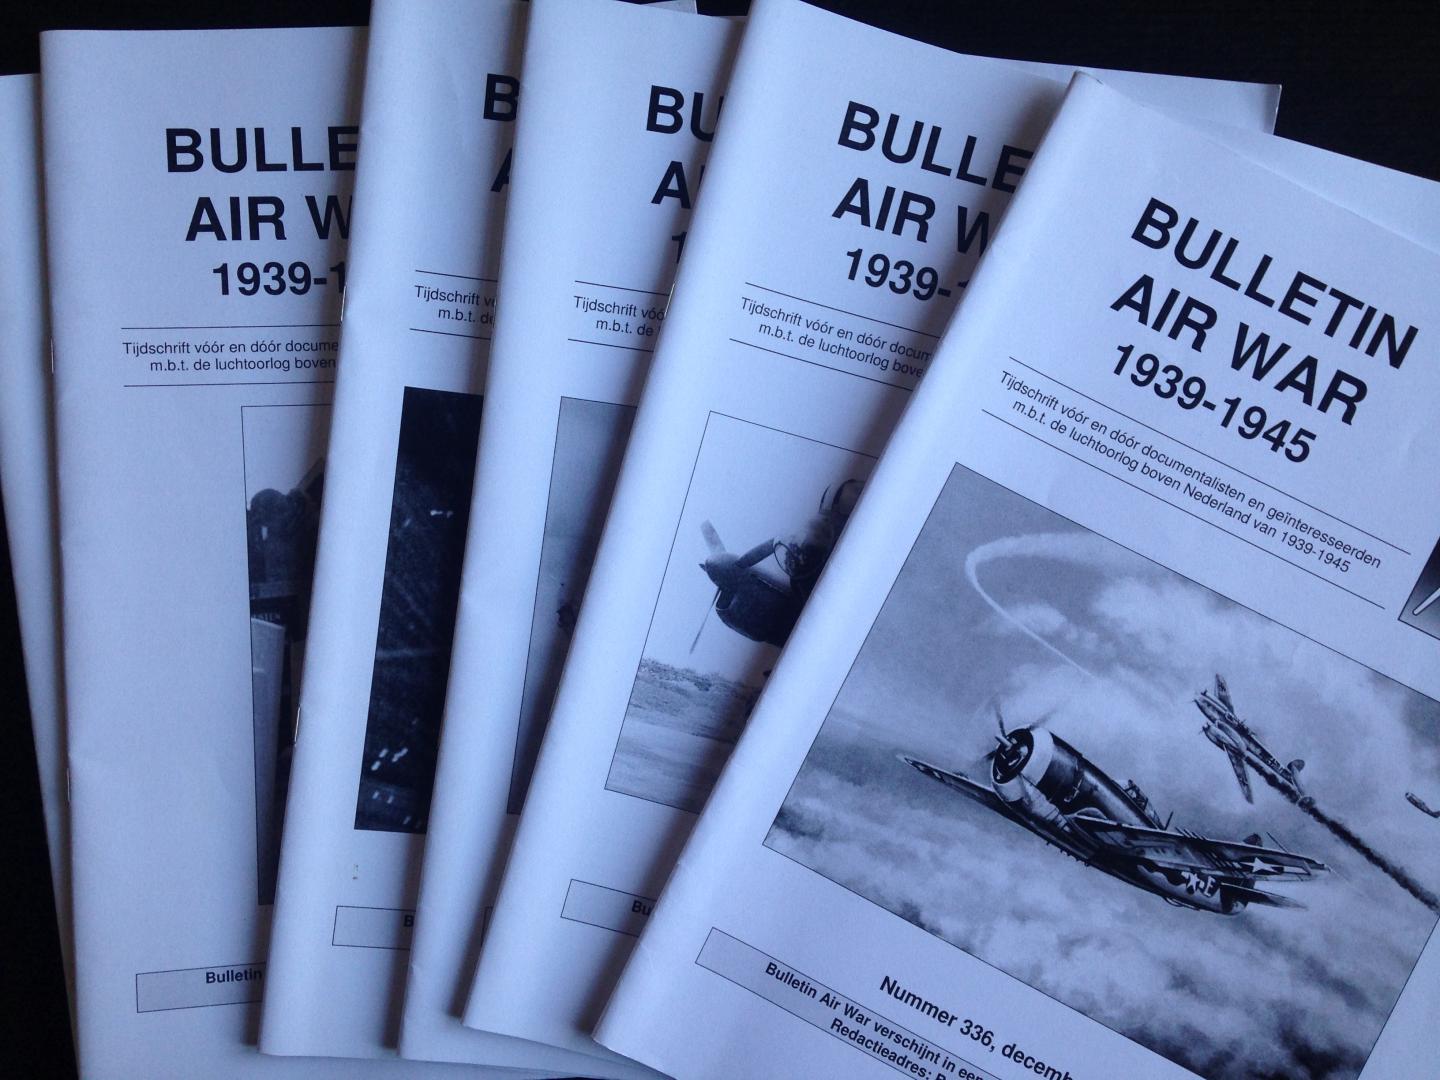  - Bulletin Air War 1939-1945